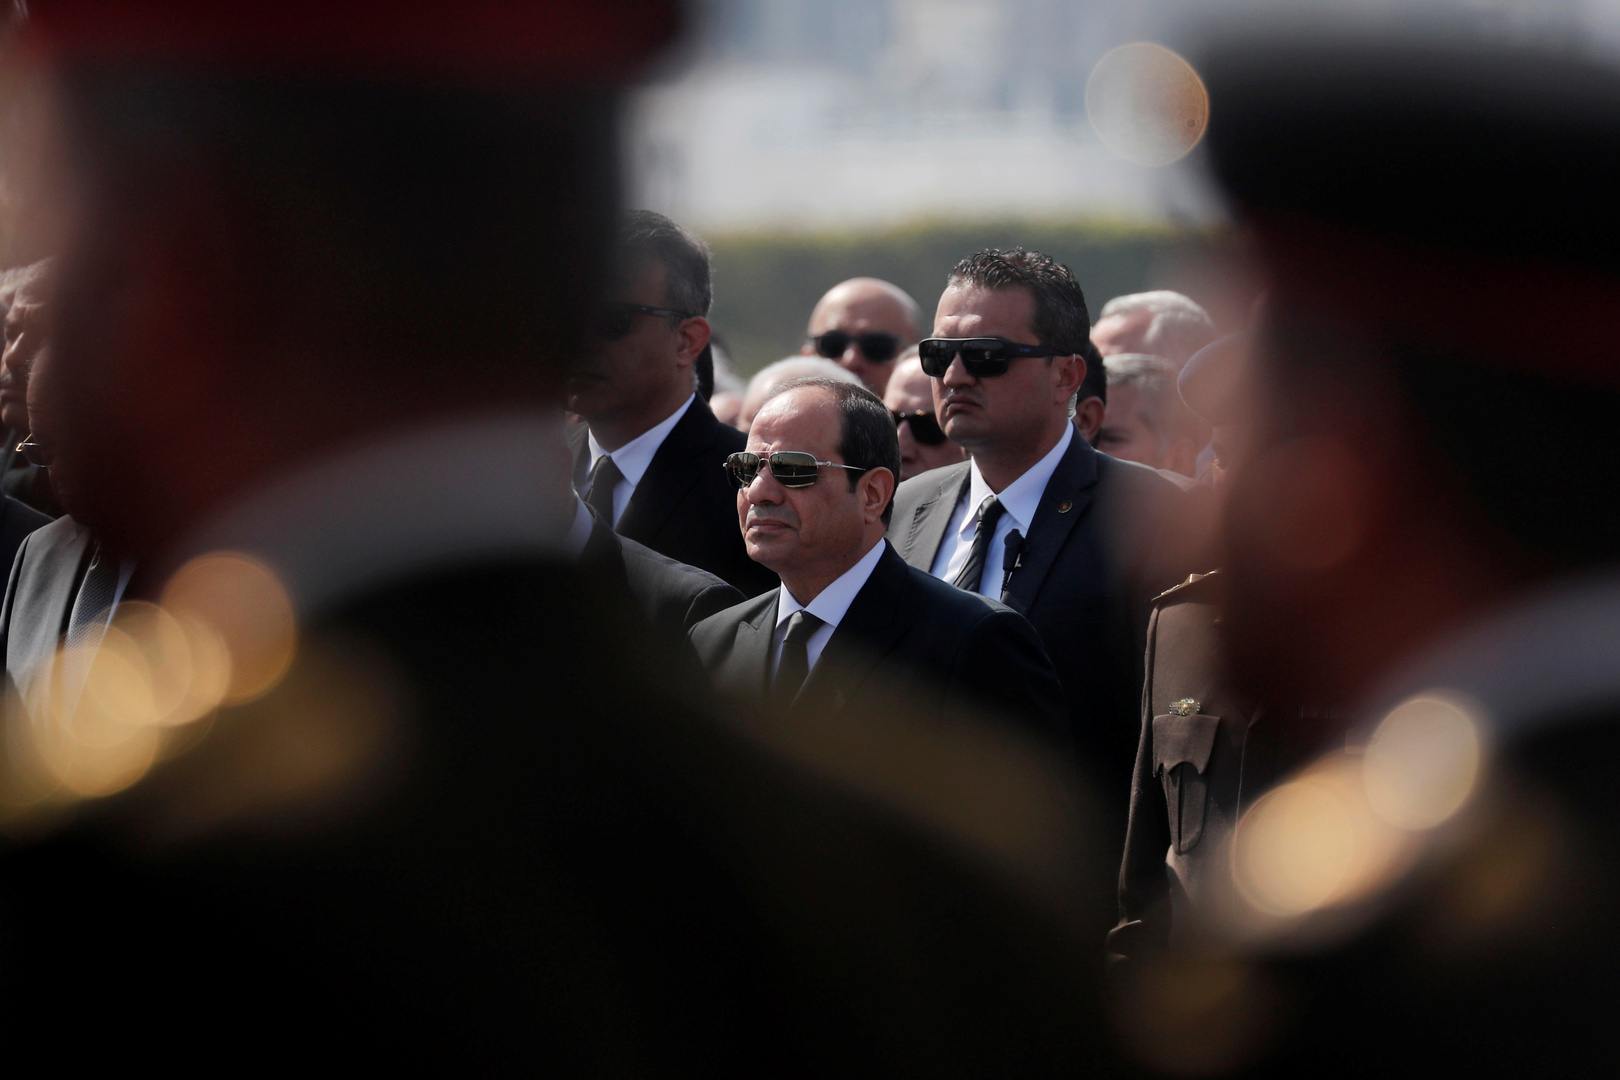 السيسي يعزي أرملة الرئيس الراحل حسني مبارك بوفاته (صور)